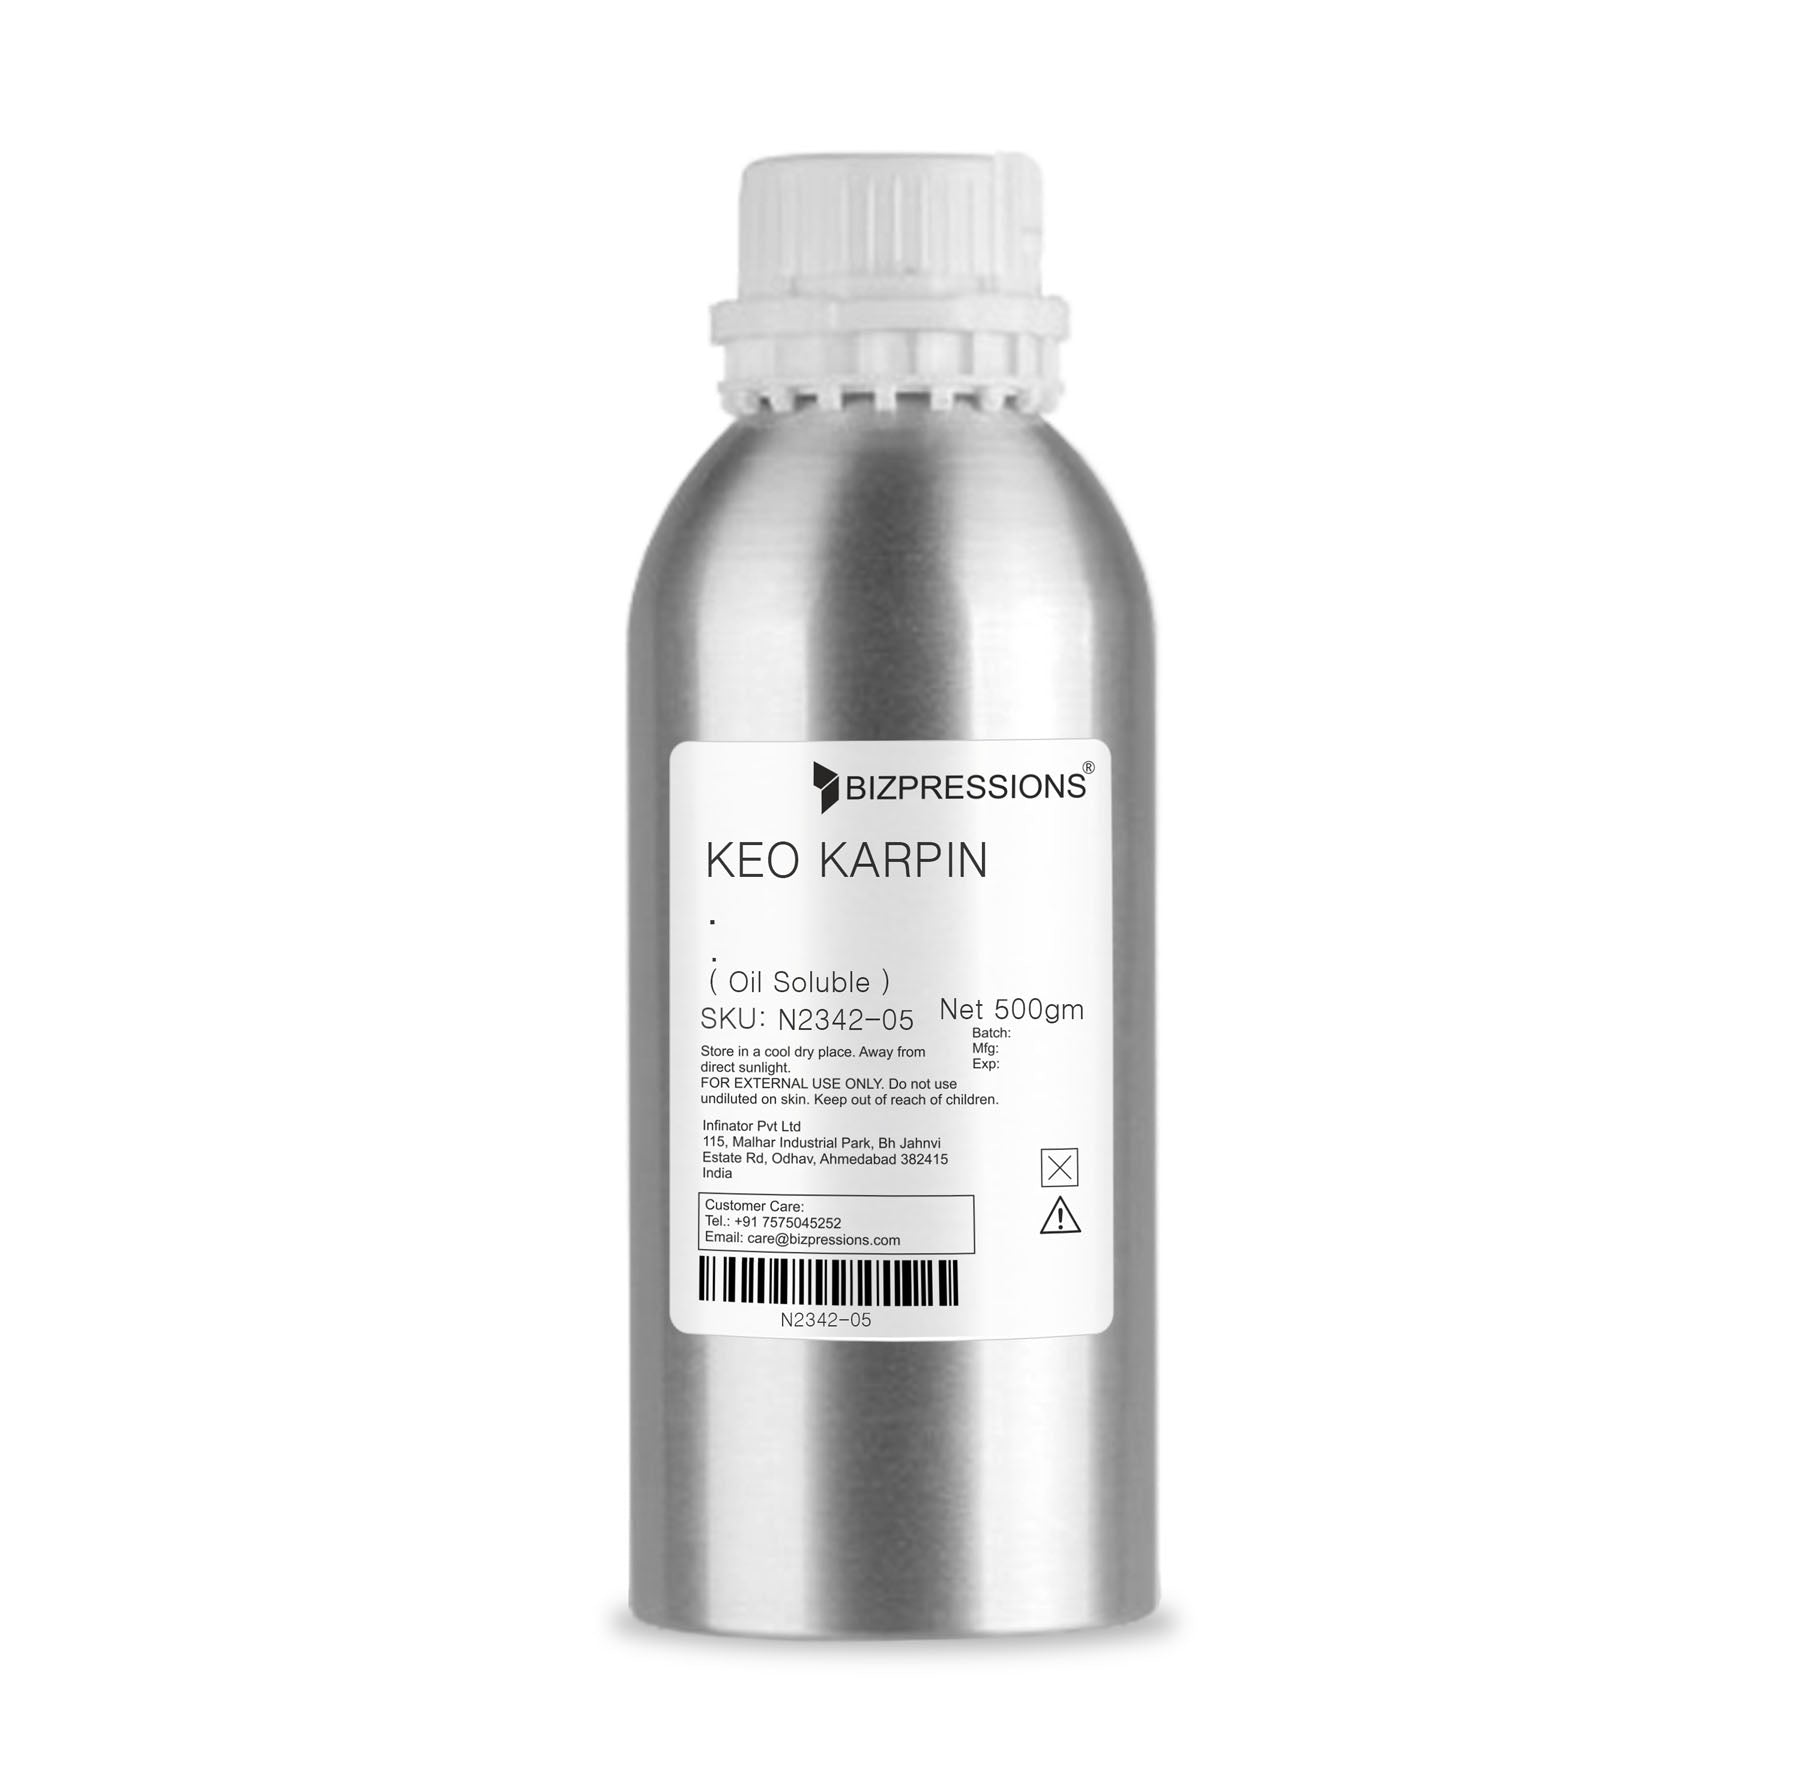 KEO KARPIN - Fragrance ( Oil Soluble ) - 500 gm